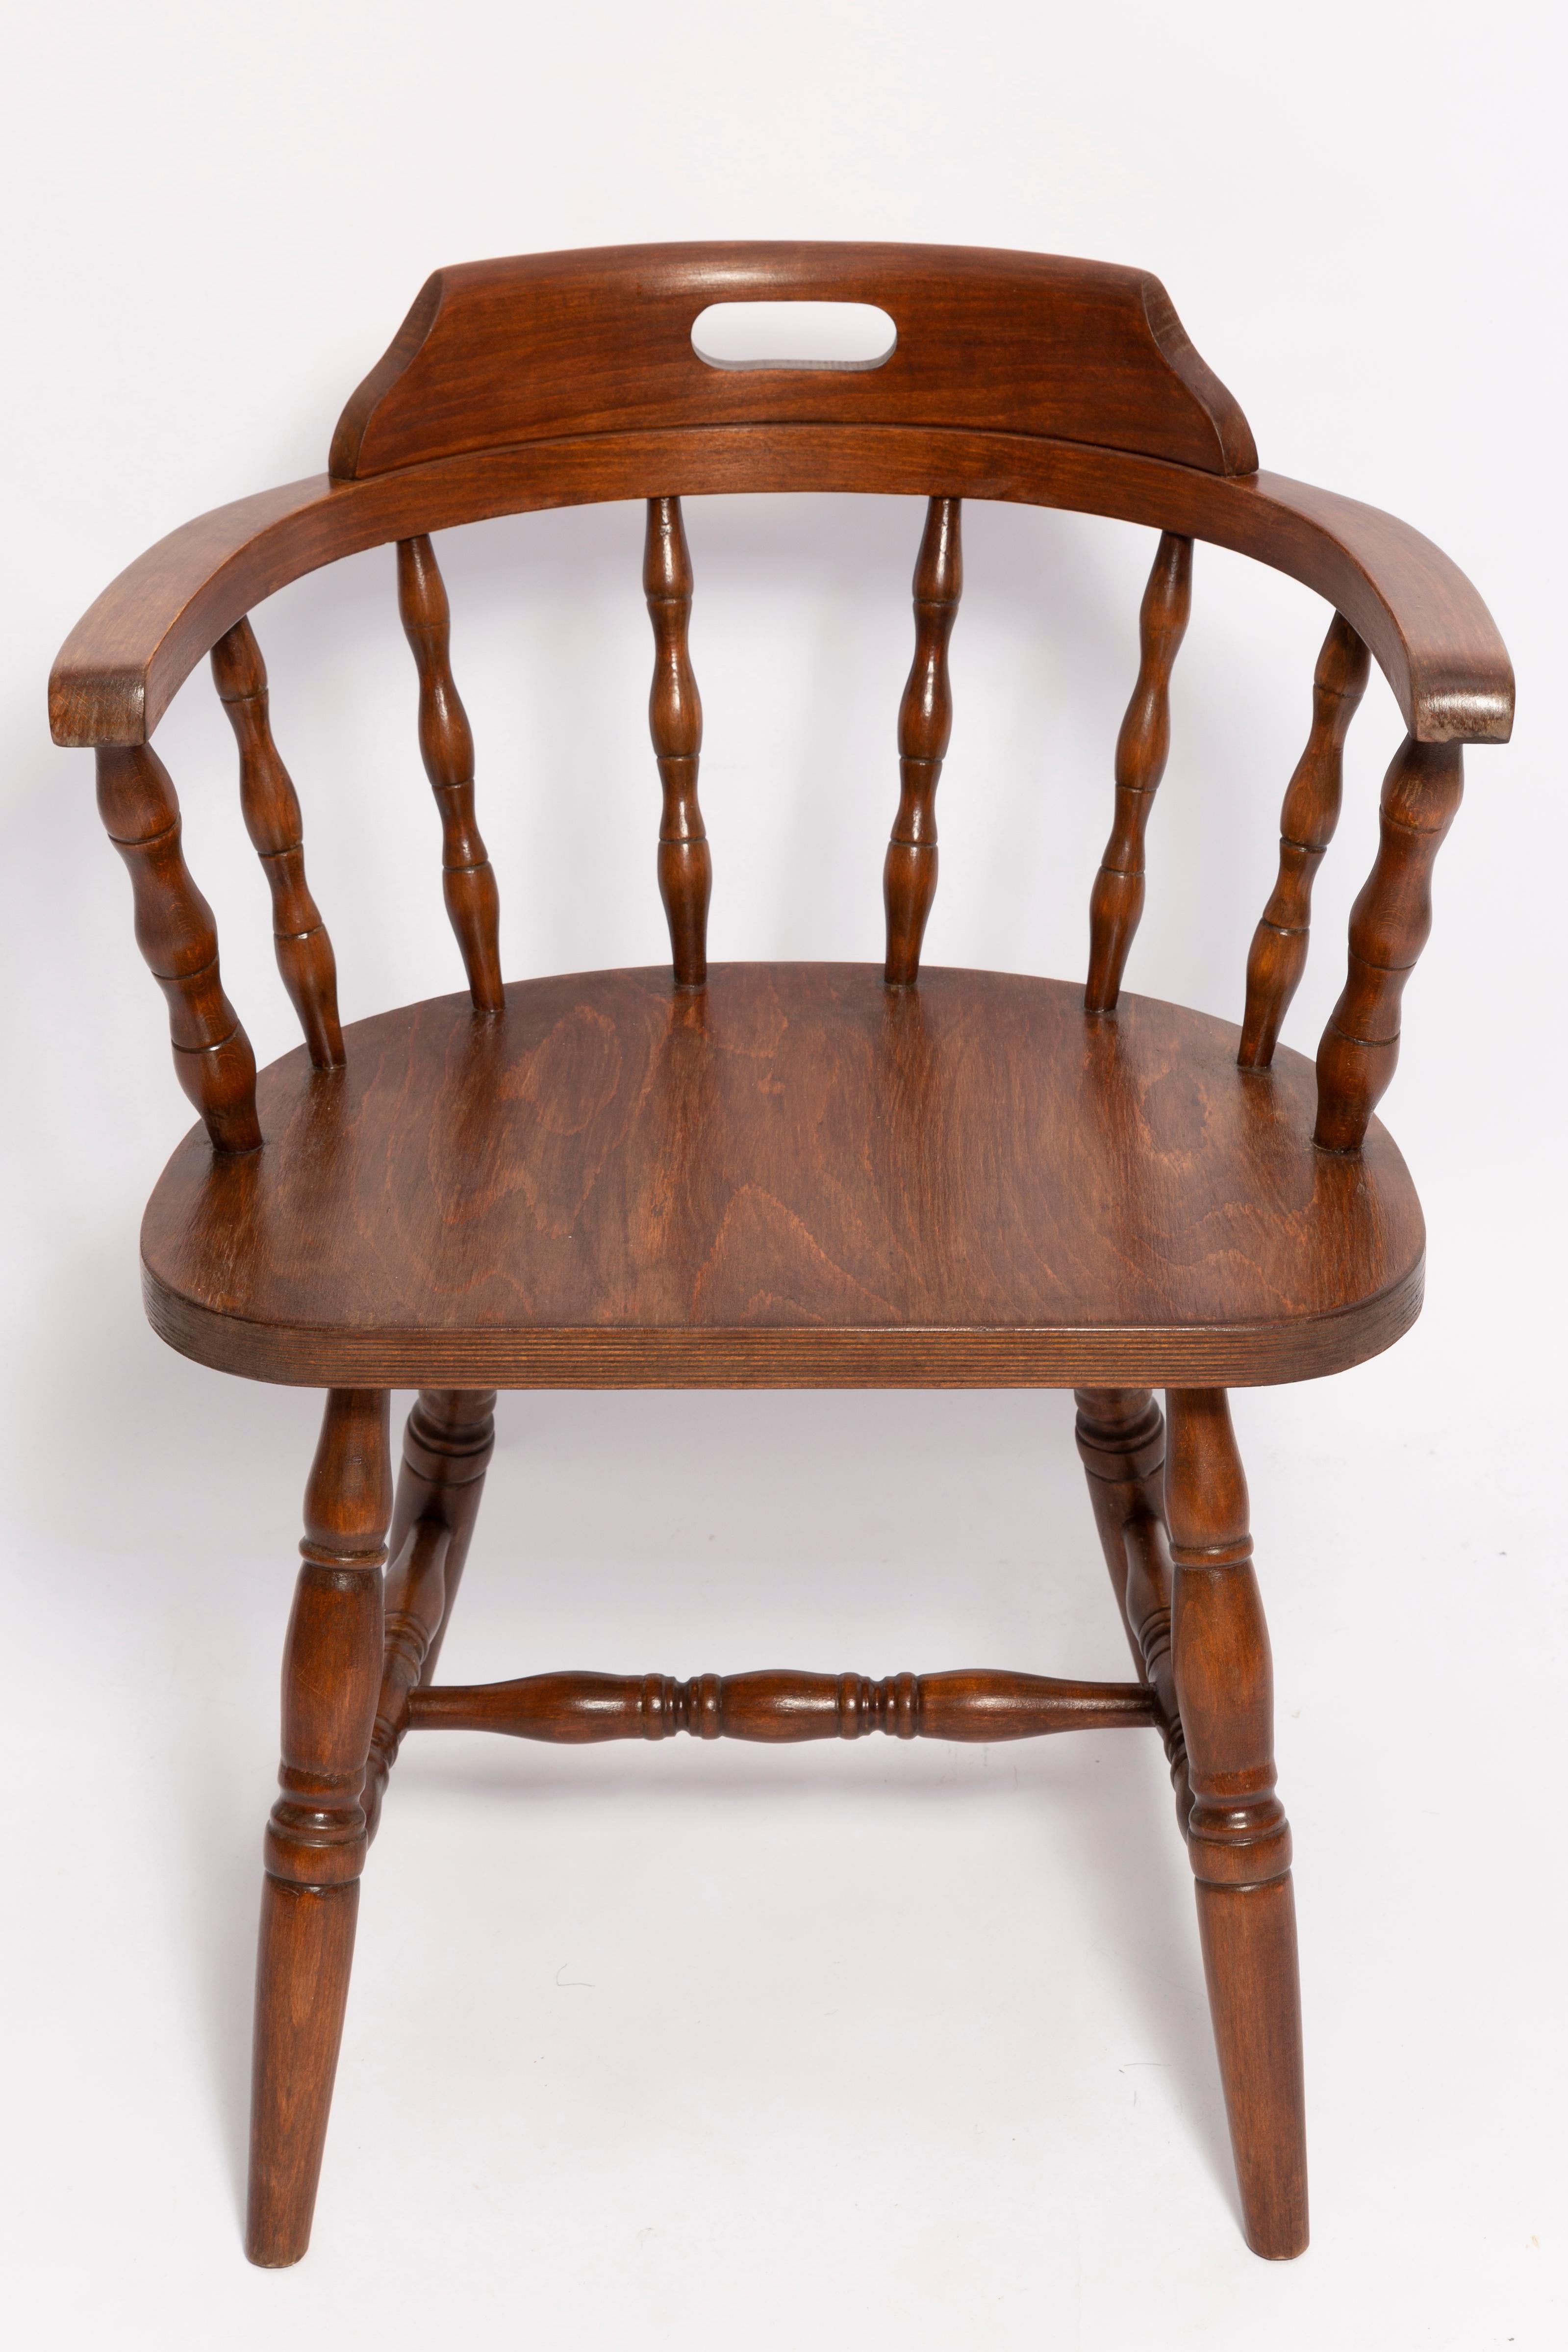 Stuhl entworfen von Prof. Rajmund Halas. Er heißt Bonanza Chair. 

Hergestellt aus Buchenholz. Stuhl ist nach einer kompletten Renovierung, die Holzarbeiten wurden aufgefrischt. 

Der Stuhl ist stabil und sehr formschön. 

Der Stuhl wurde in